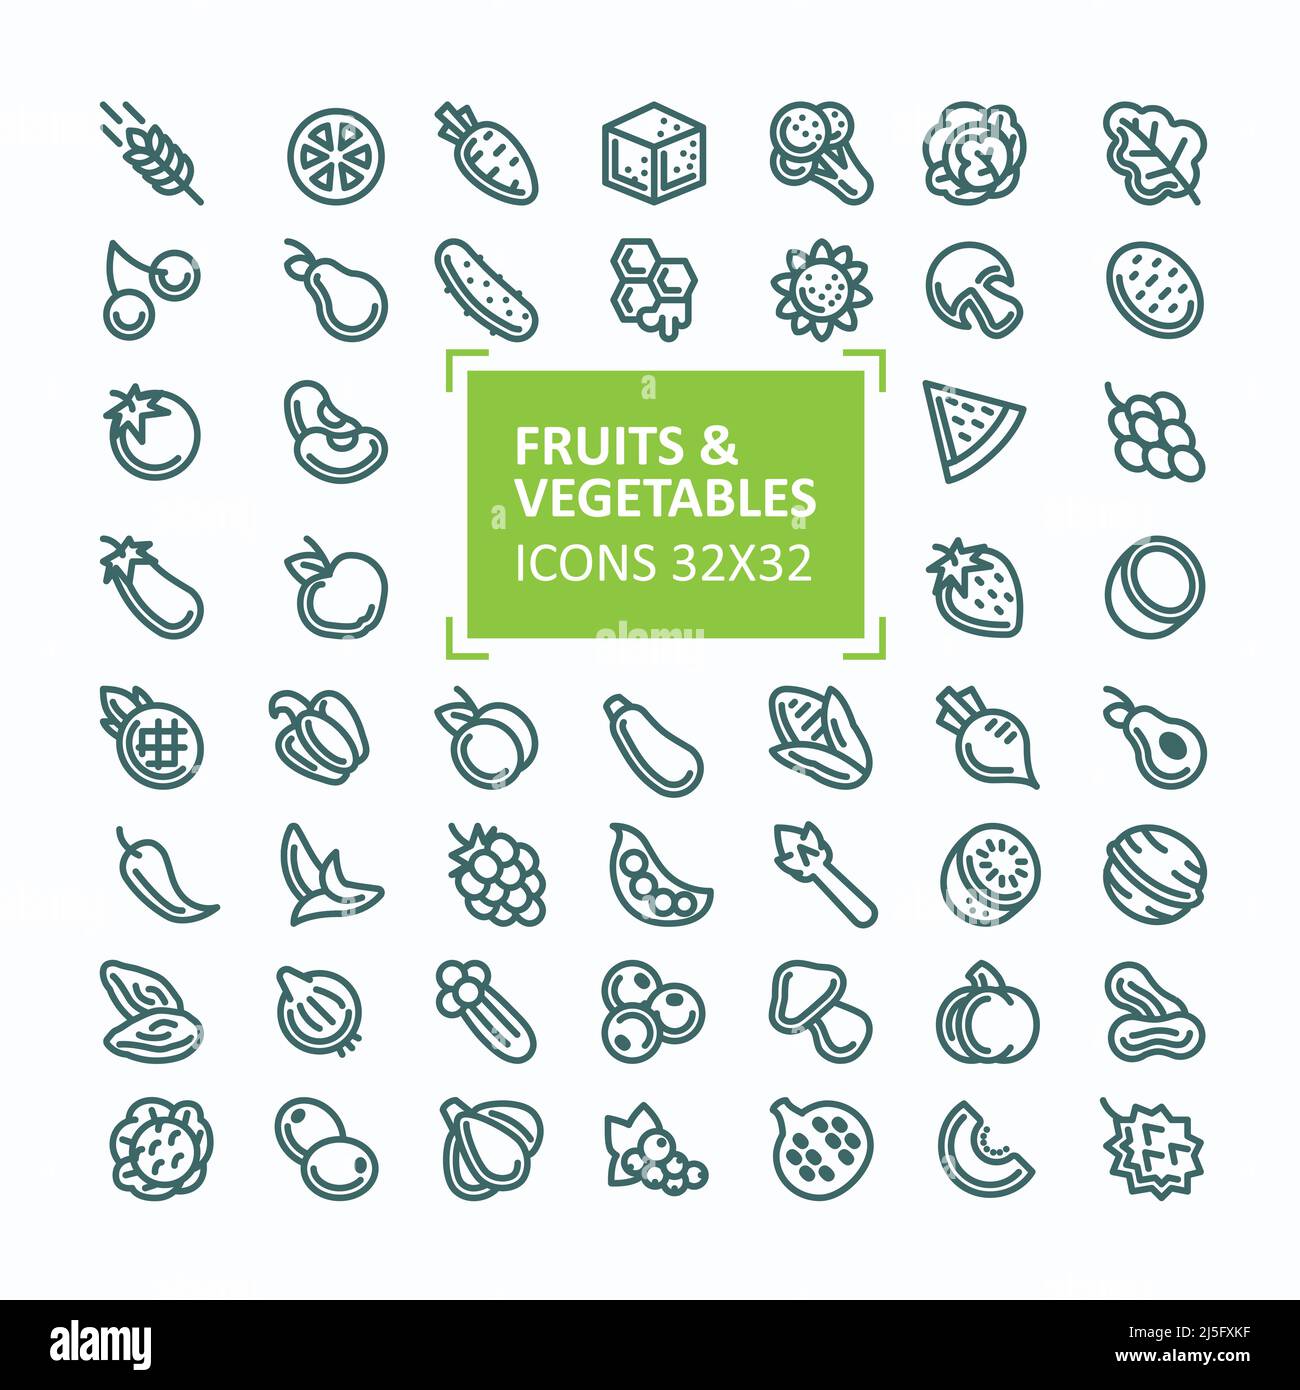 Set of Pixel Art Green Vegetables Icon. 32x32 Pixels Stock Vector